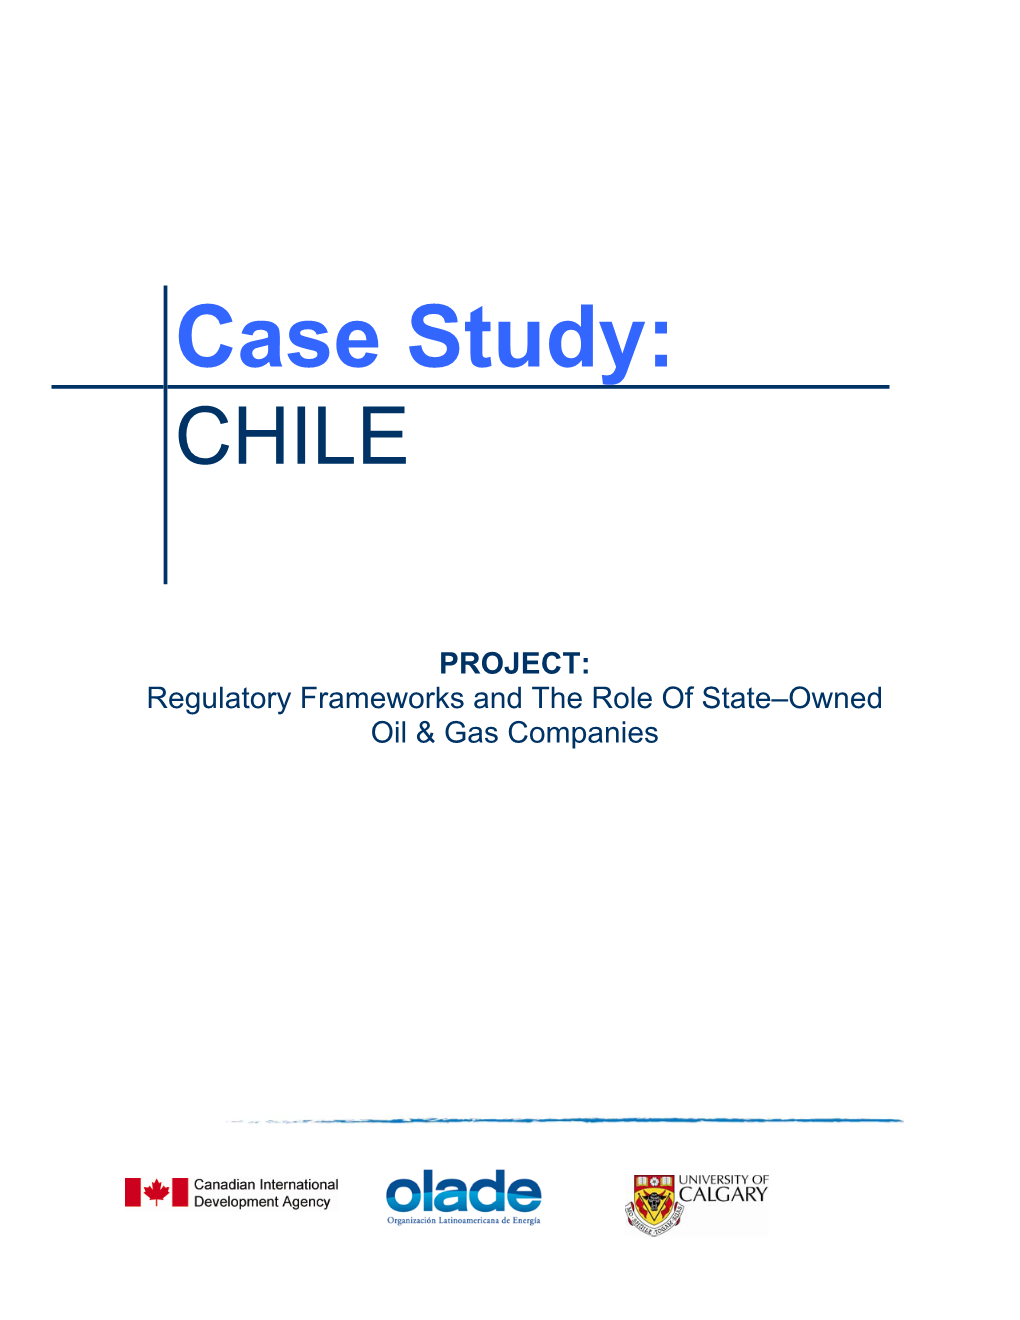 Case Study: CHILE